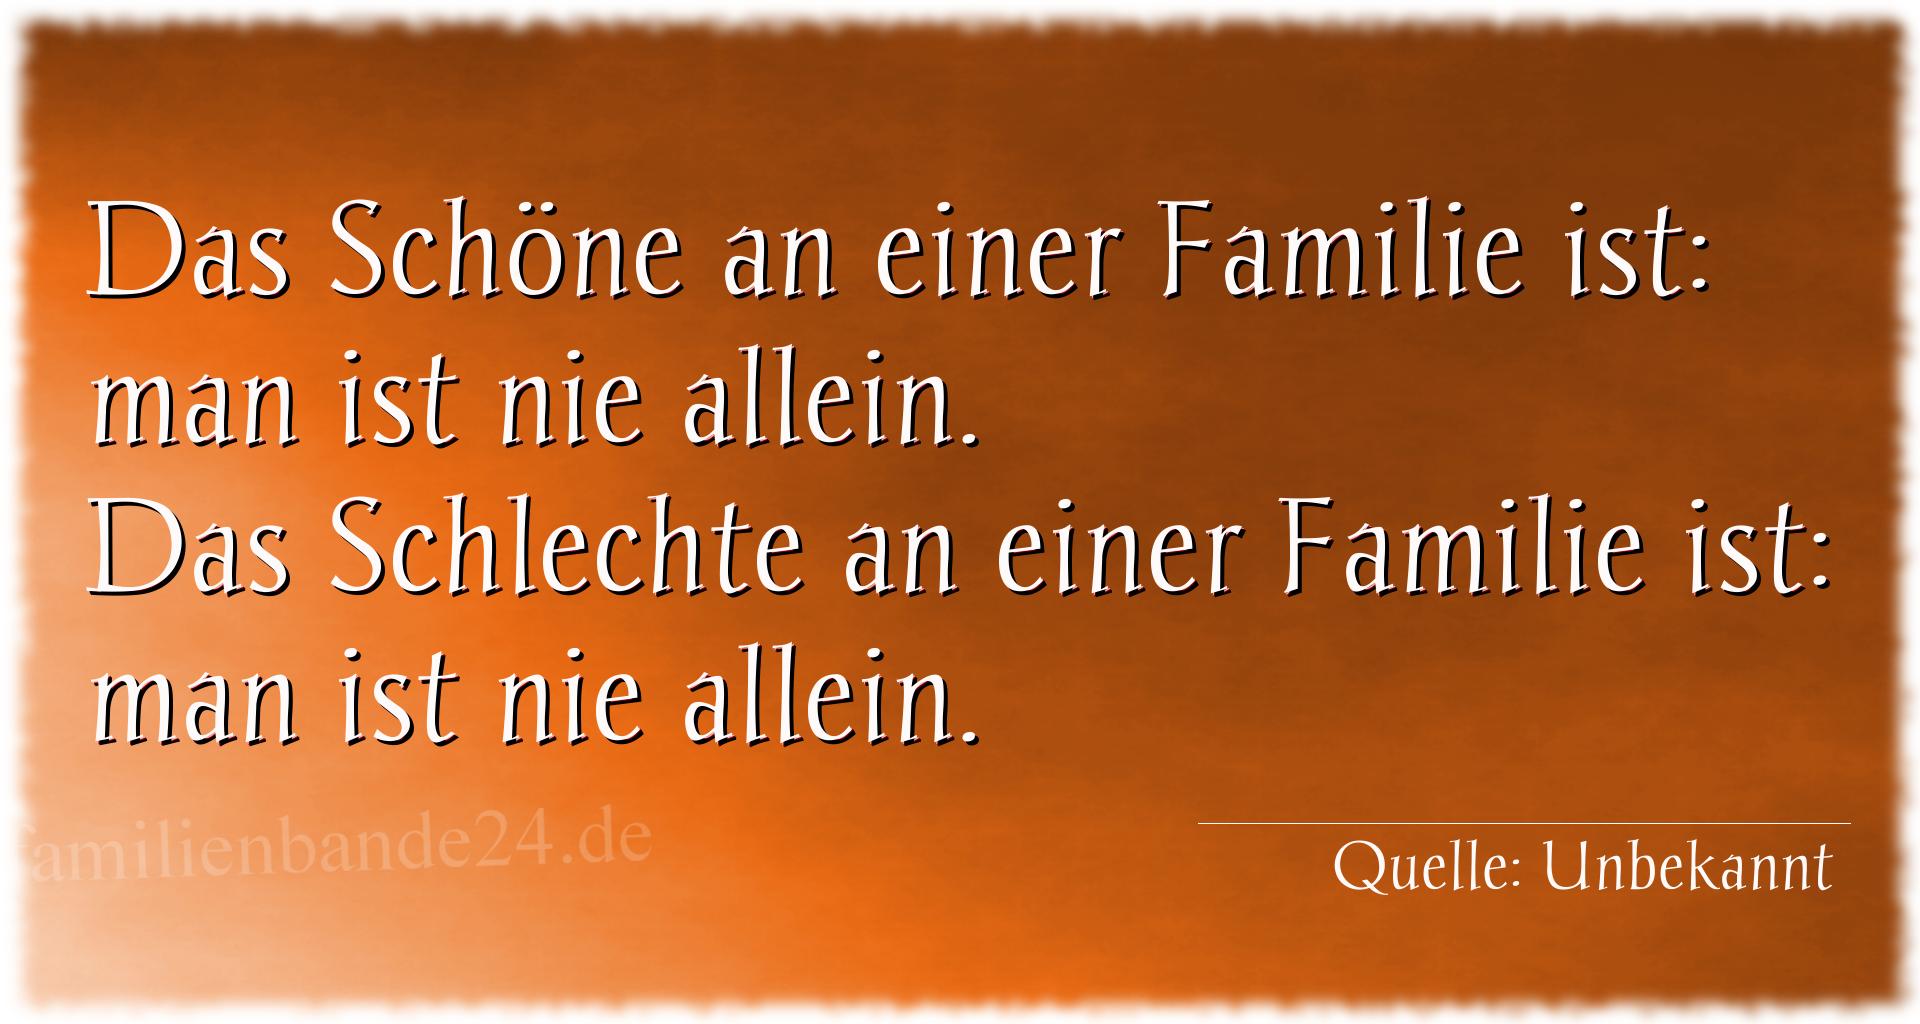 Spruch Nr. 1962: Das Schöne an einer Familie ist: man ist nie allein.
Das [...]